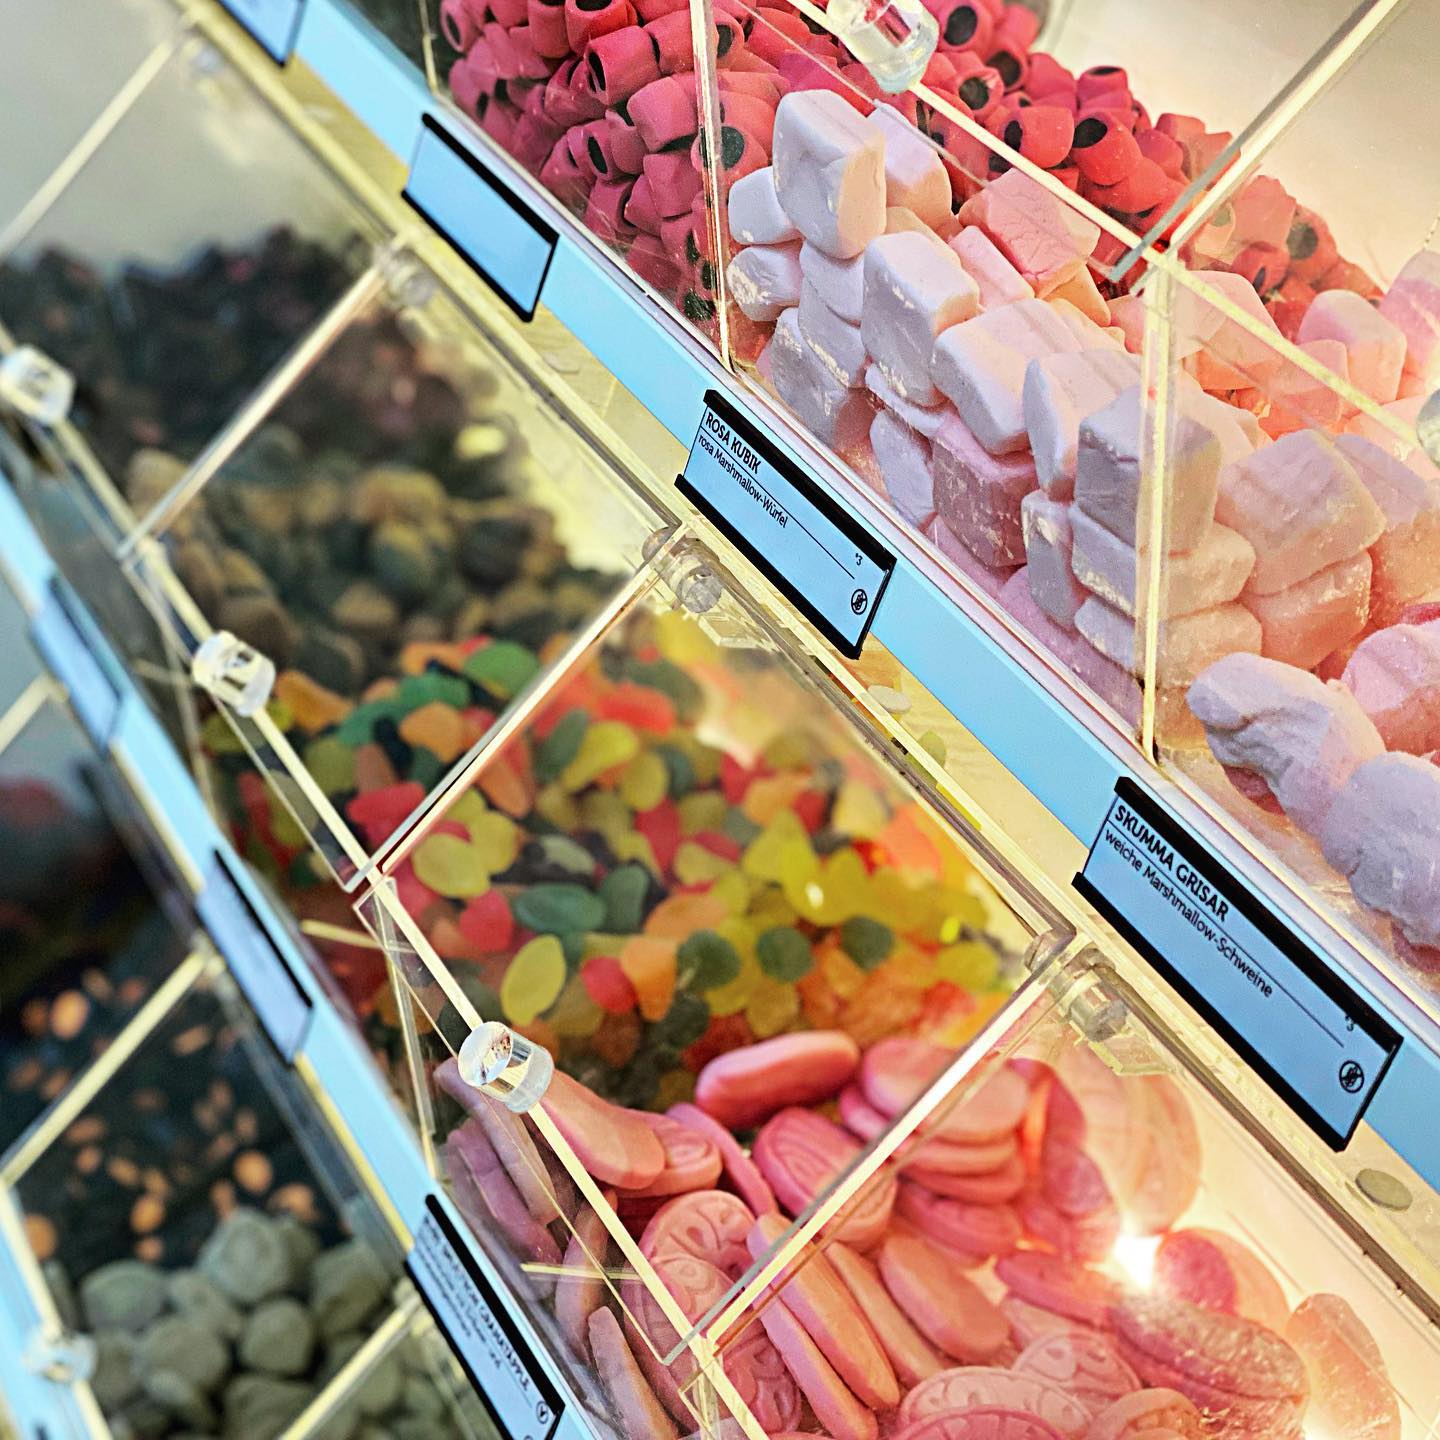 Naschhaus - Dein neuer Lieblingsladen für außergewöhnliche Süßigkeiten aus Skandinavien in Berlin-Friedrichshain 4